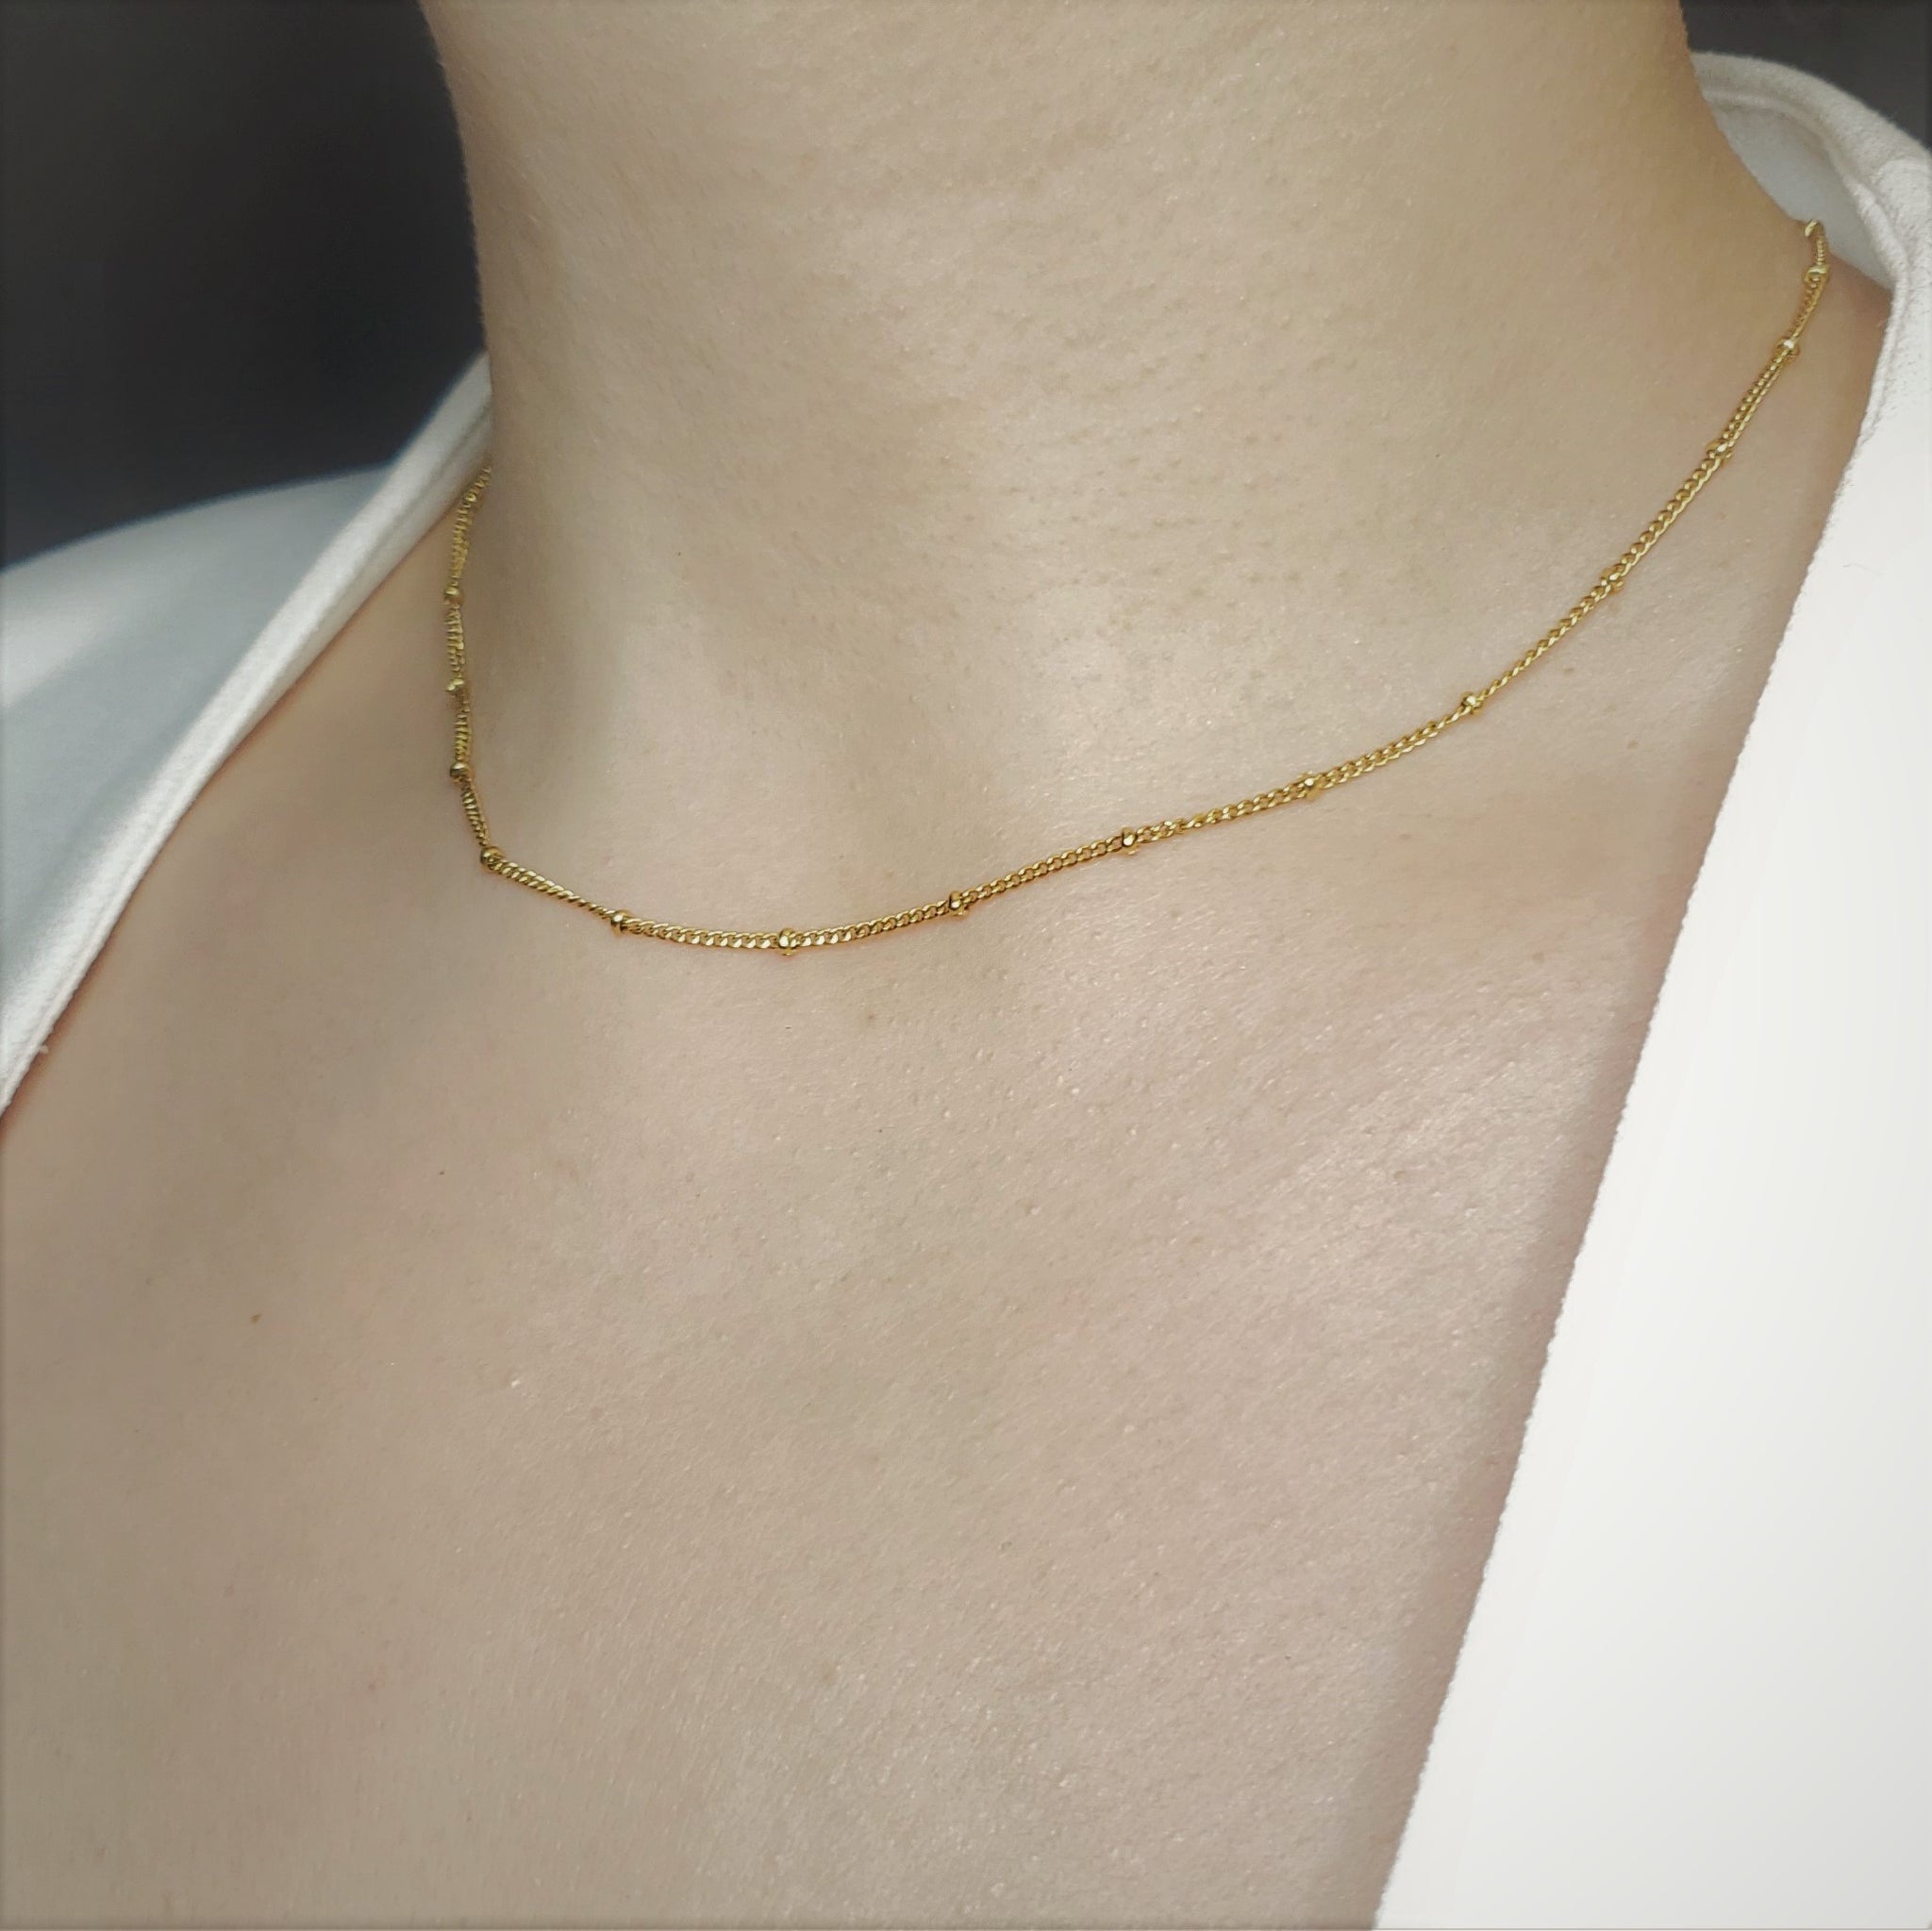 V-Necklace - Vida  Jewelry necklace simple, Girly jewelry, Dainty jewelry  necklace